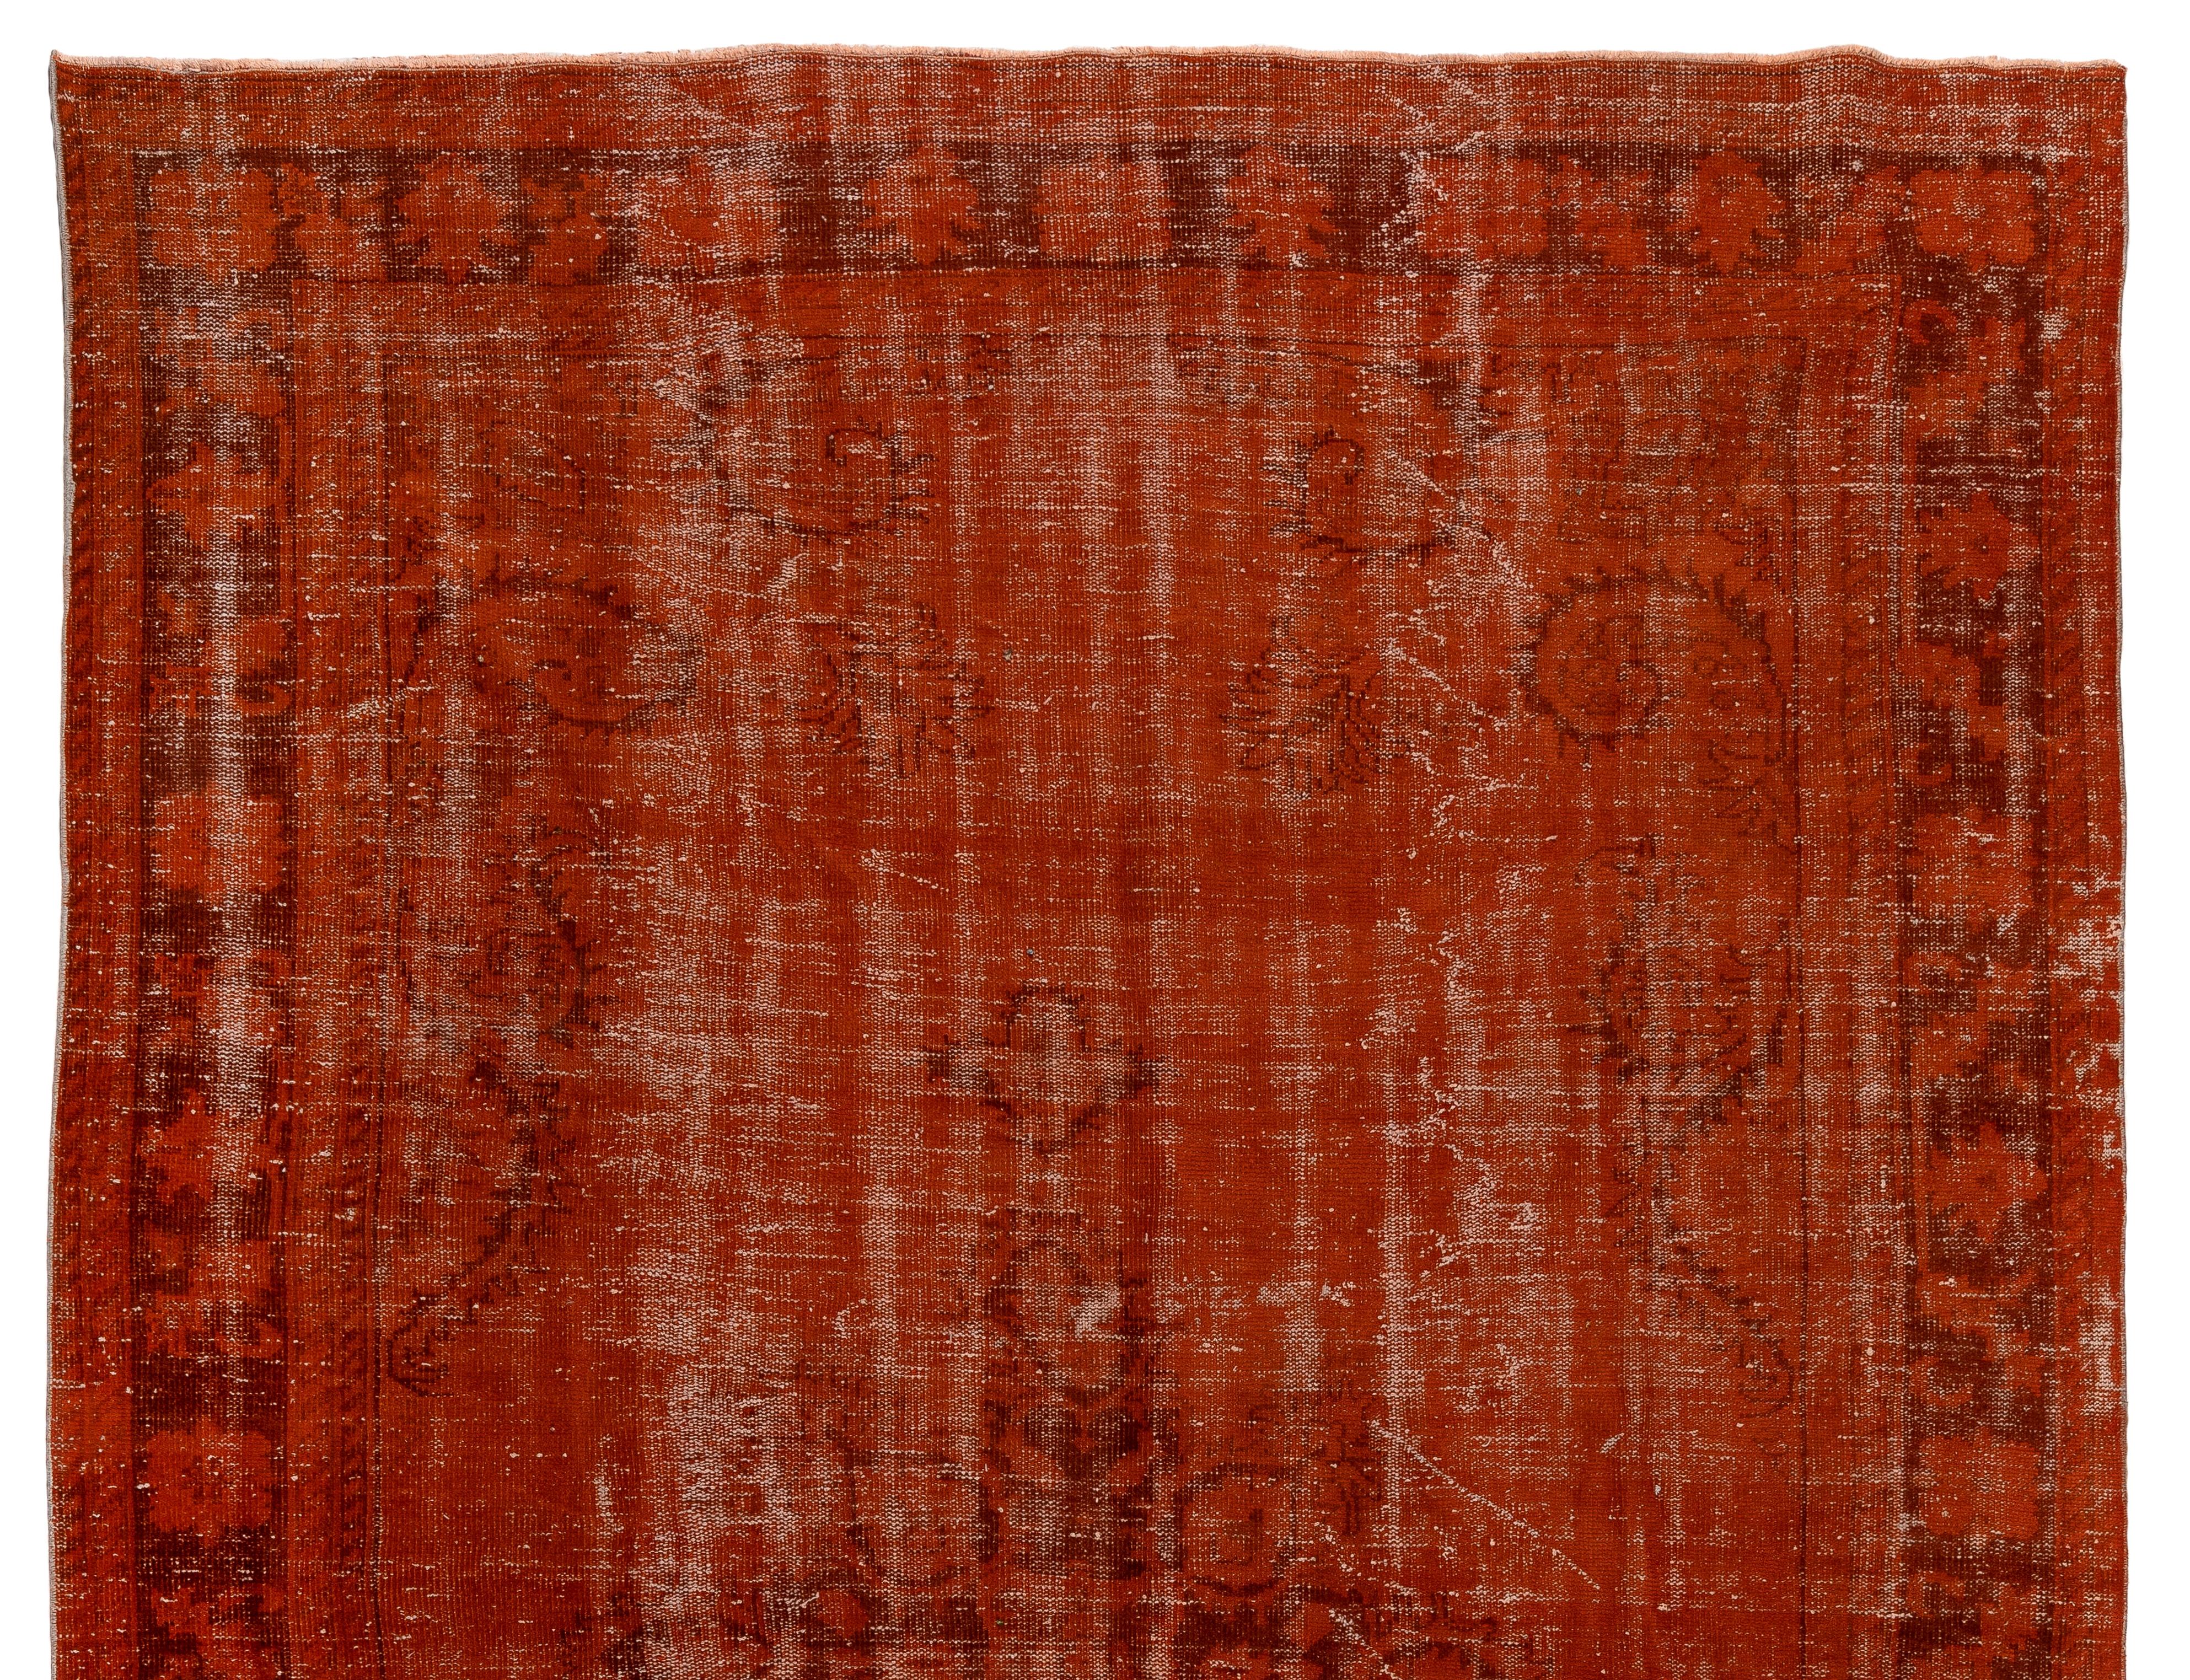 Ein türkischer Teppich im Vintage-Stil, der in Orange umgefärbt wurde.
Fein handgeknüpft, niedriger Wollflor auf Baumwollbasis. Tief gewaschen.
Robust und geeignet für stark frequentierte Bereiche, sowohl für Wohn- als auch für Geschäftsräume.